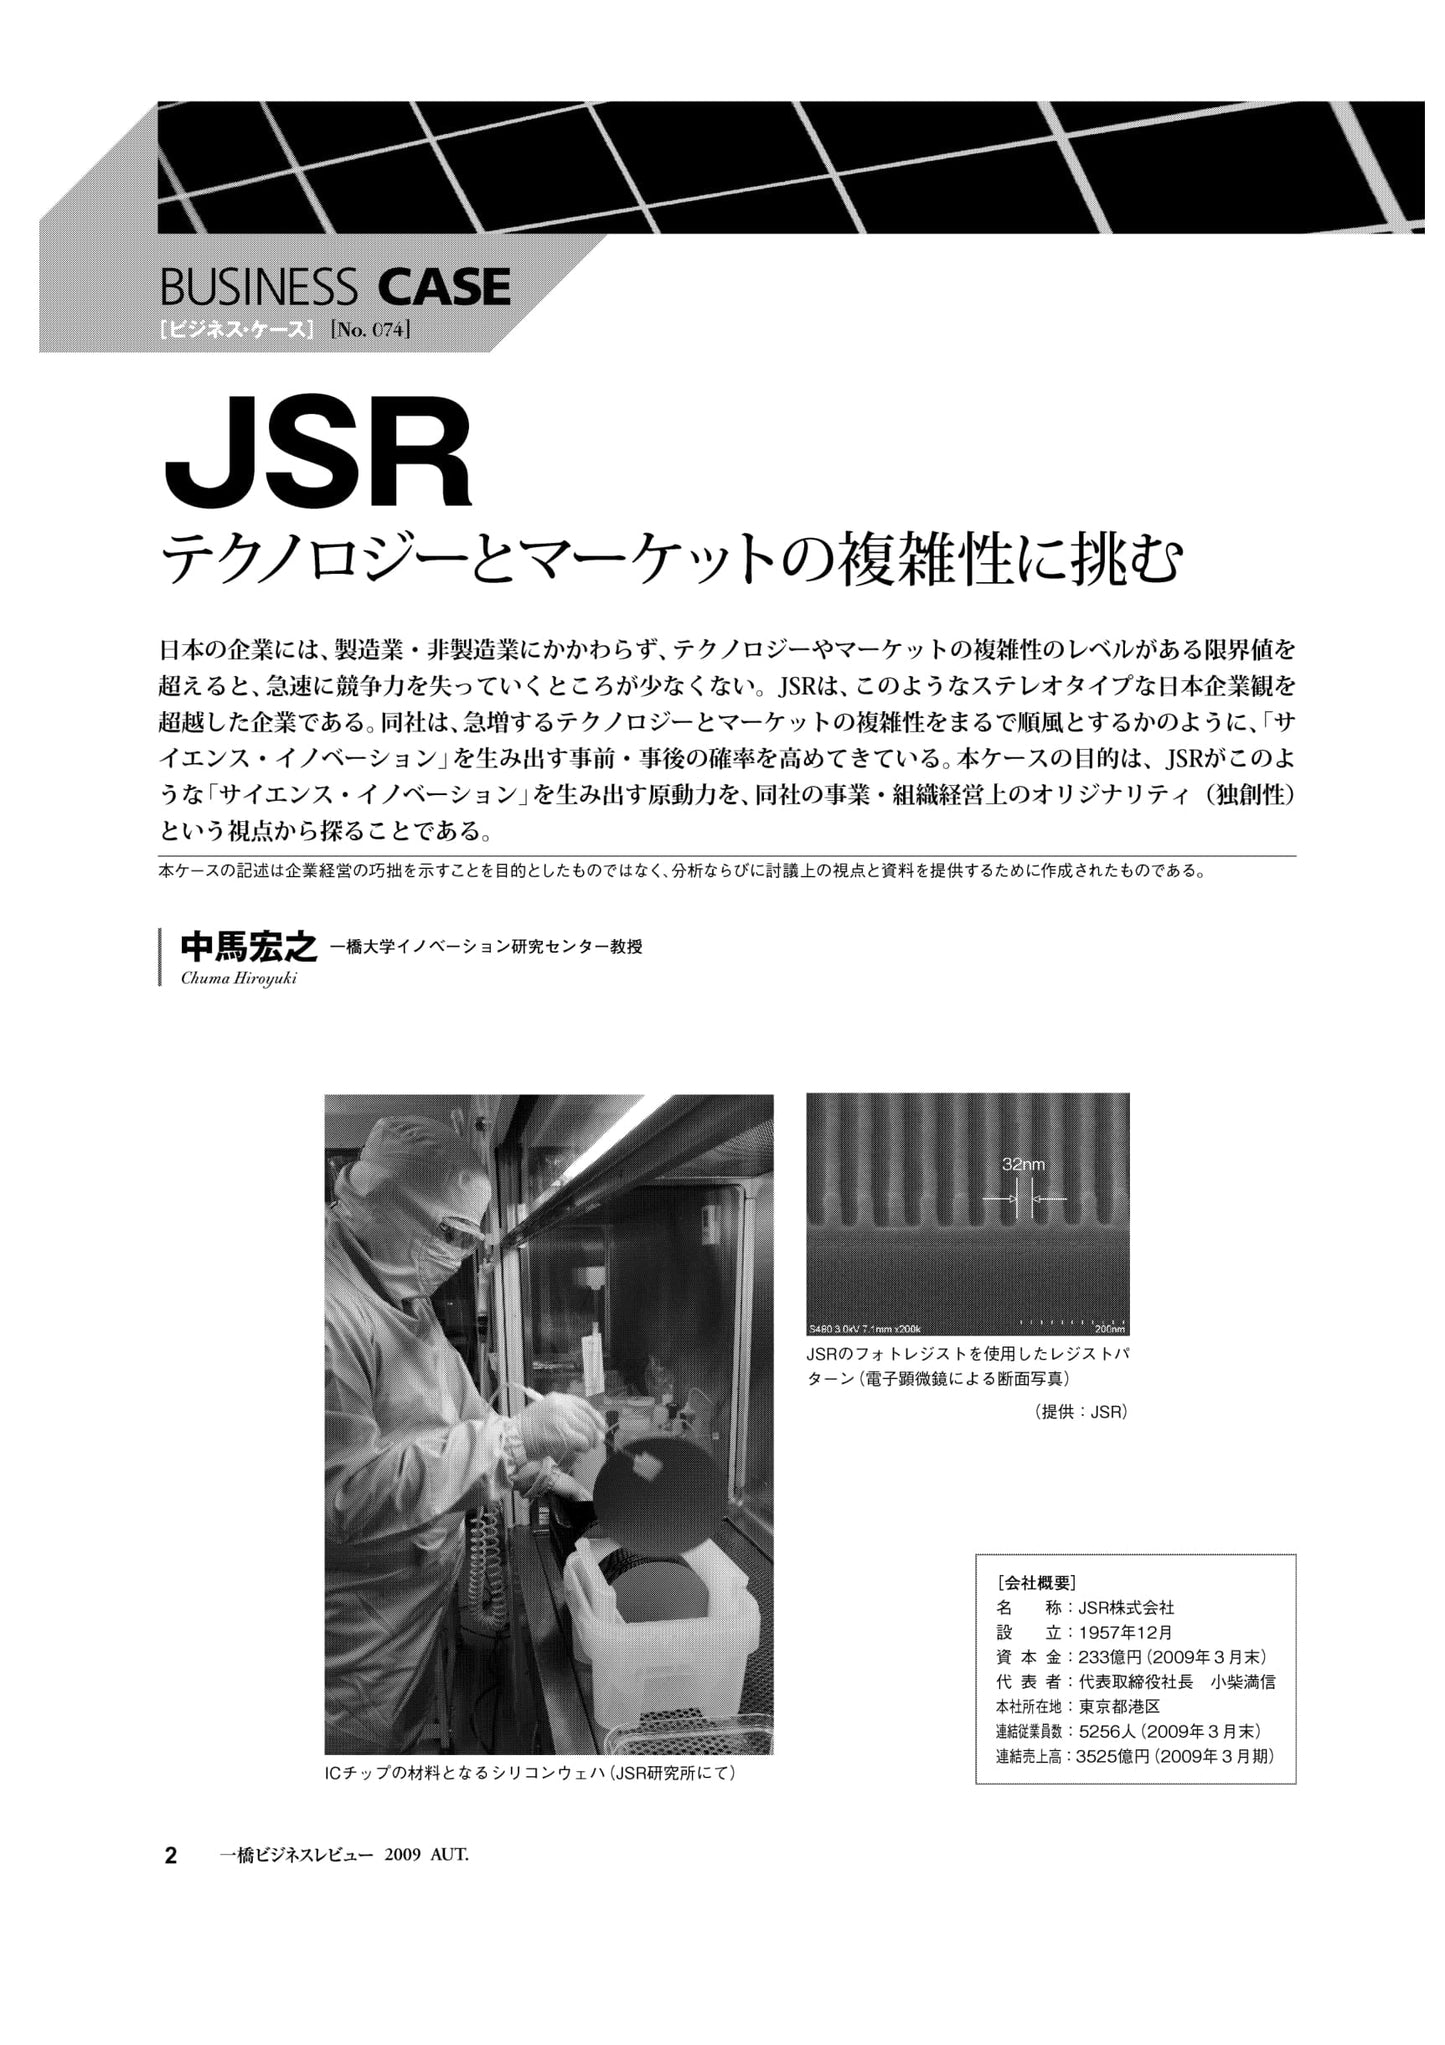 JSR : テクノロジーとマーケットの複雑性に挑む